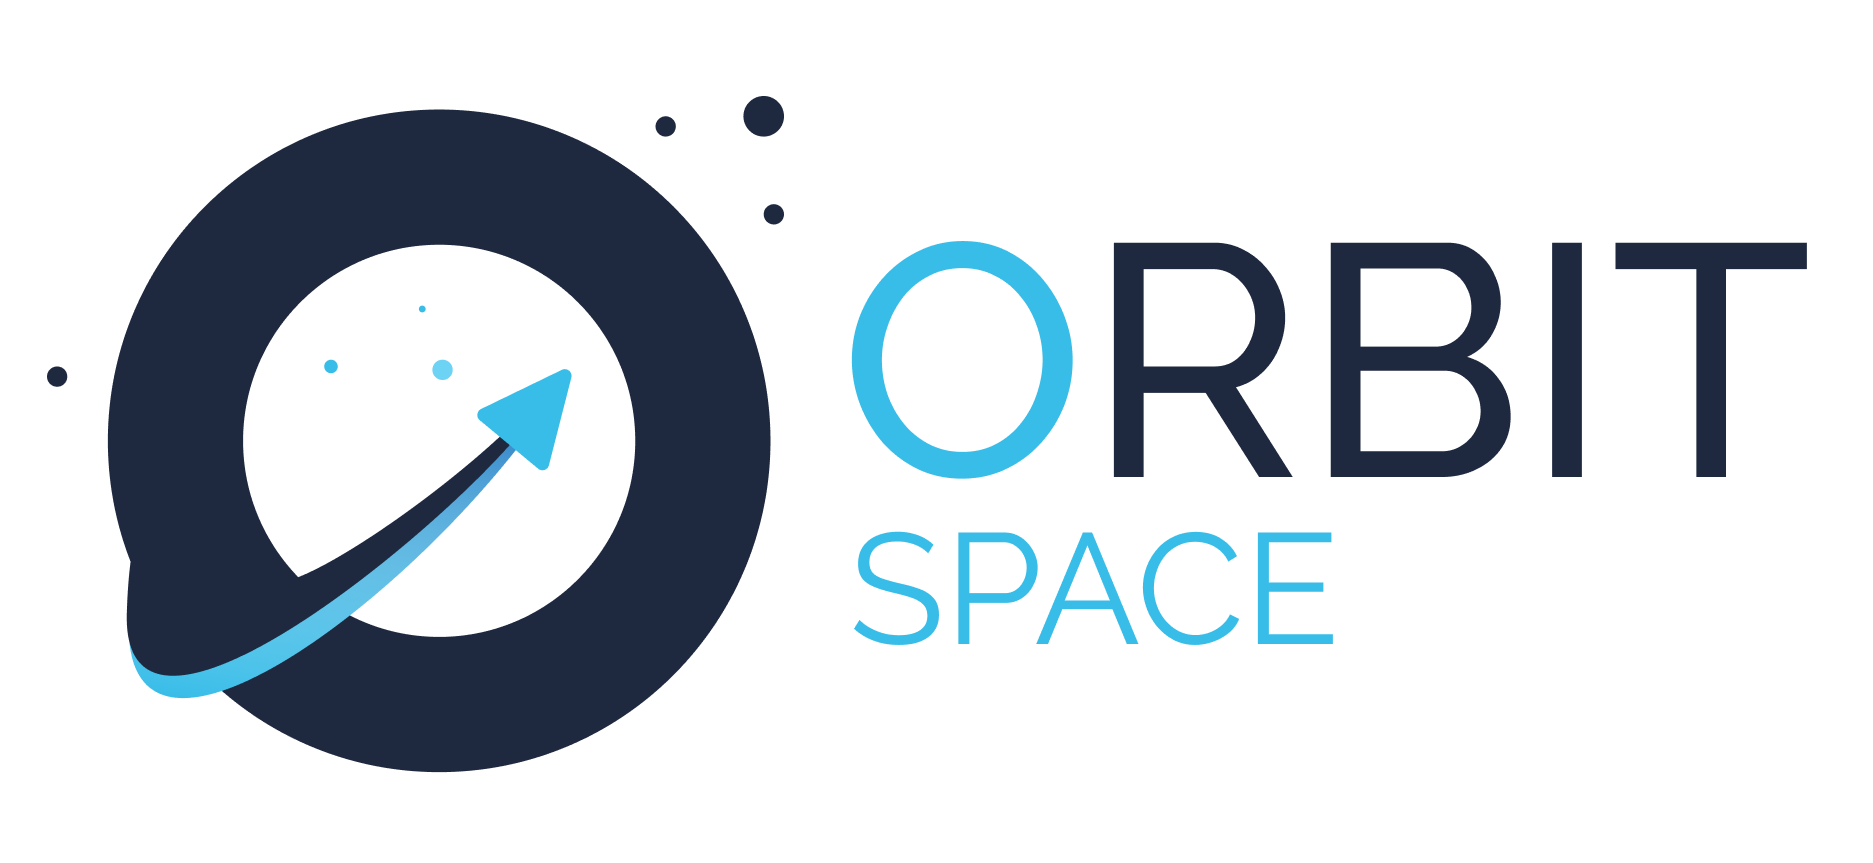 Space orbit. Orbit.